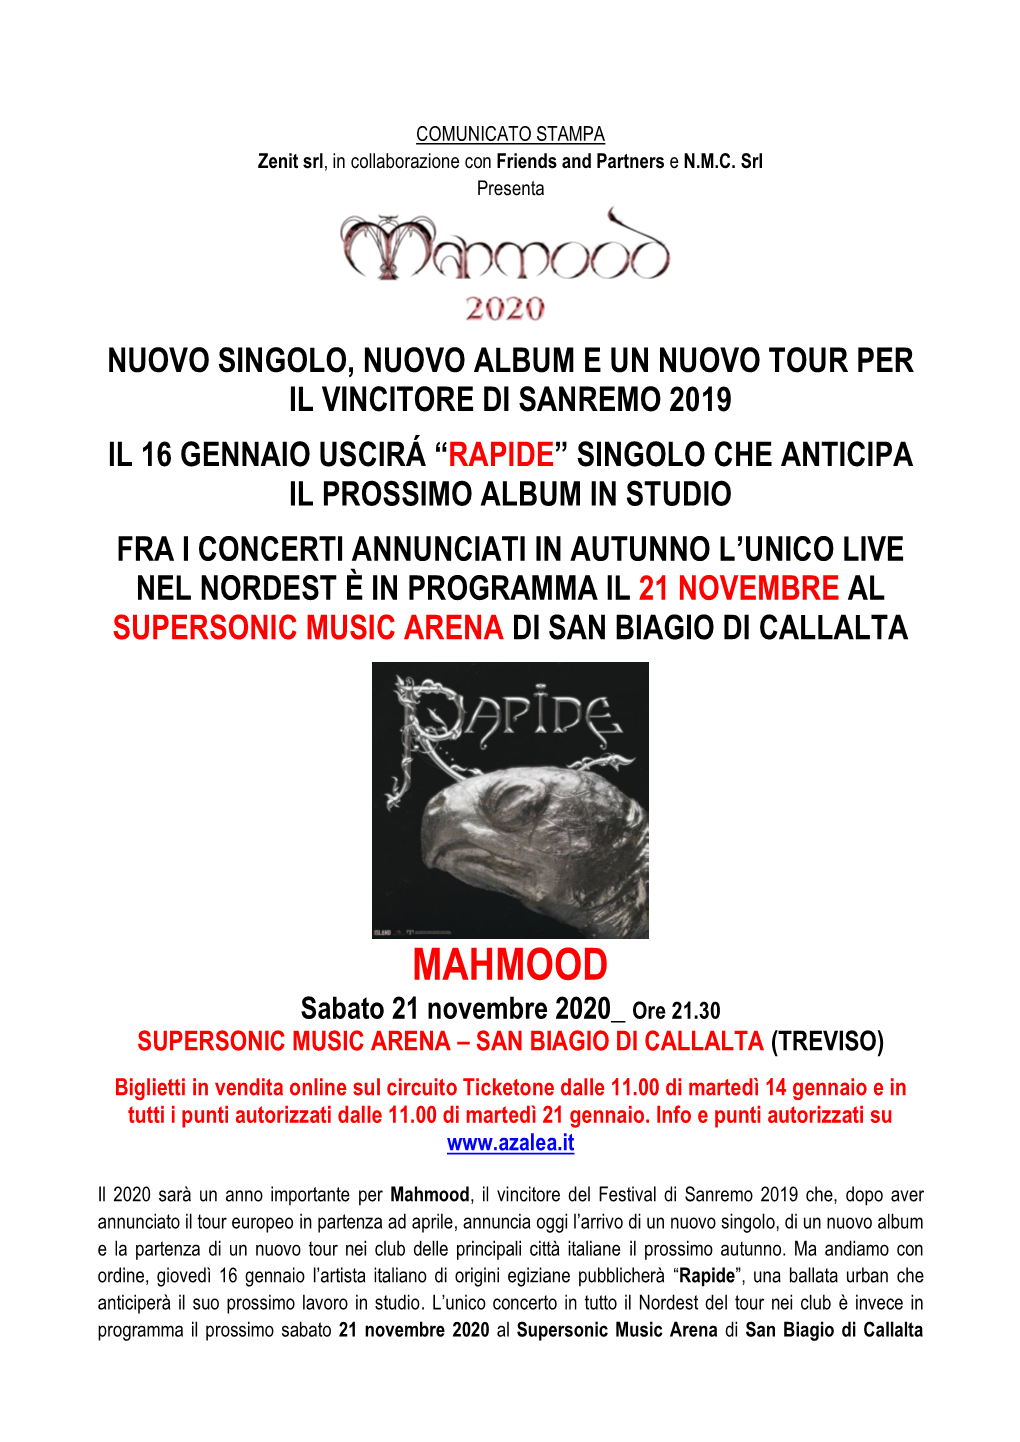 MAHMOOD Sabato 21 Novembre 2020 Ore 21.30 SUPERSONIC MUSIC ARENA – SAN BIAGIO DI CALLALTA (TREVISO)